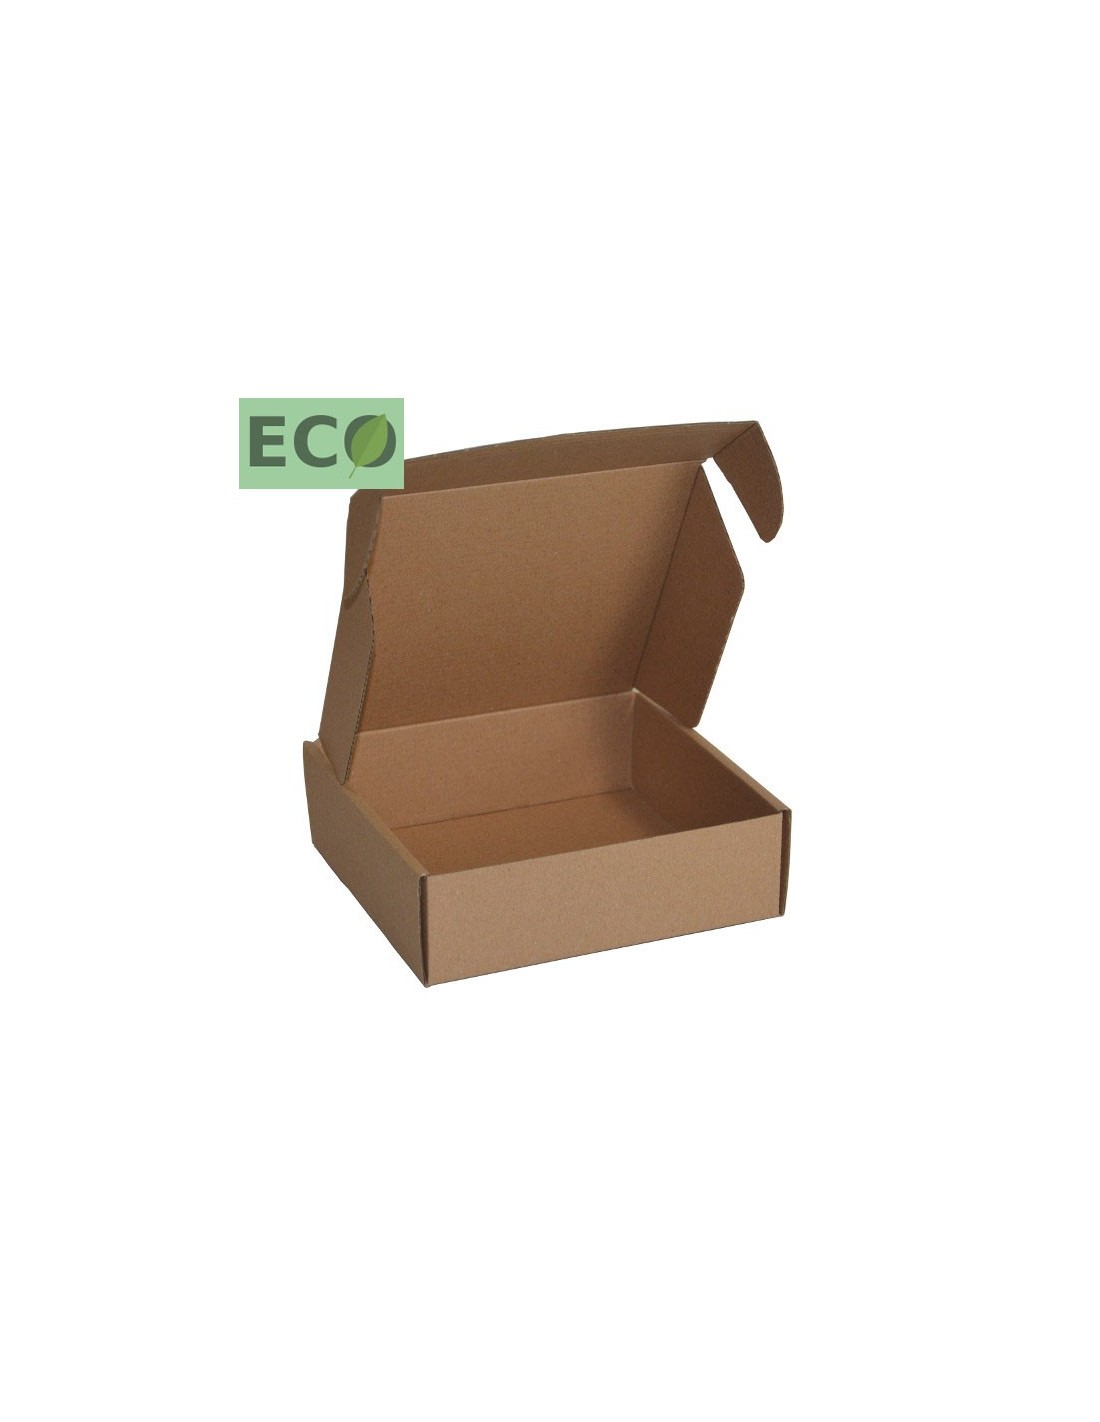 Boîte plate en carton pour envoi postal d'objets plats -Toutembal